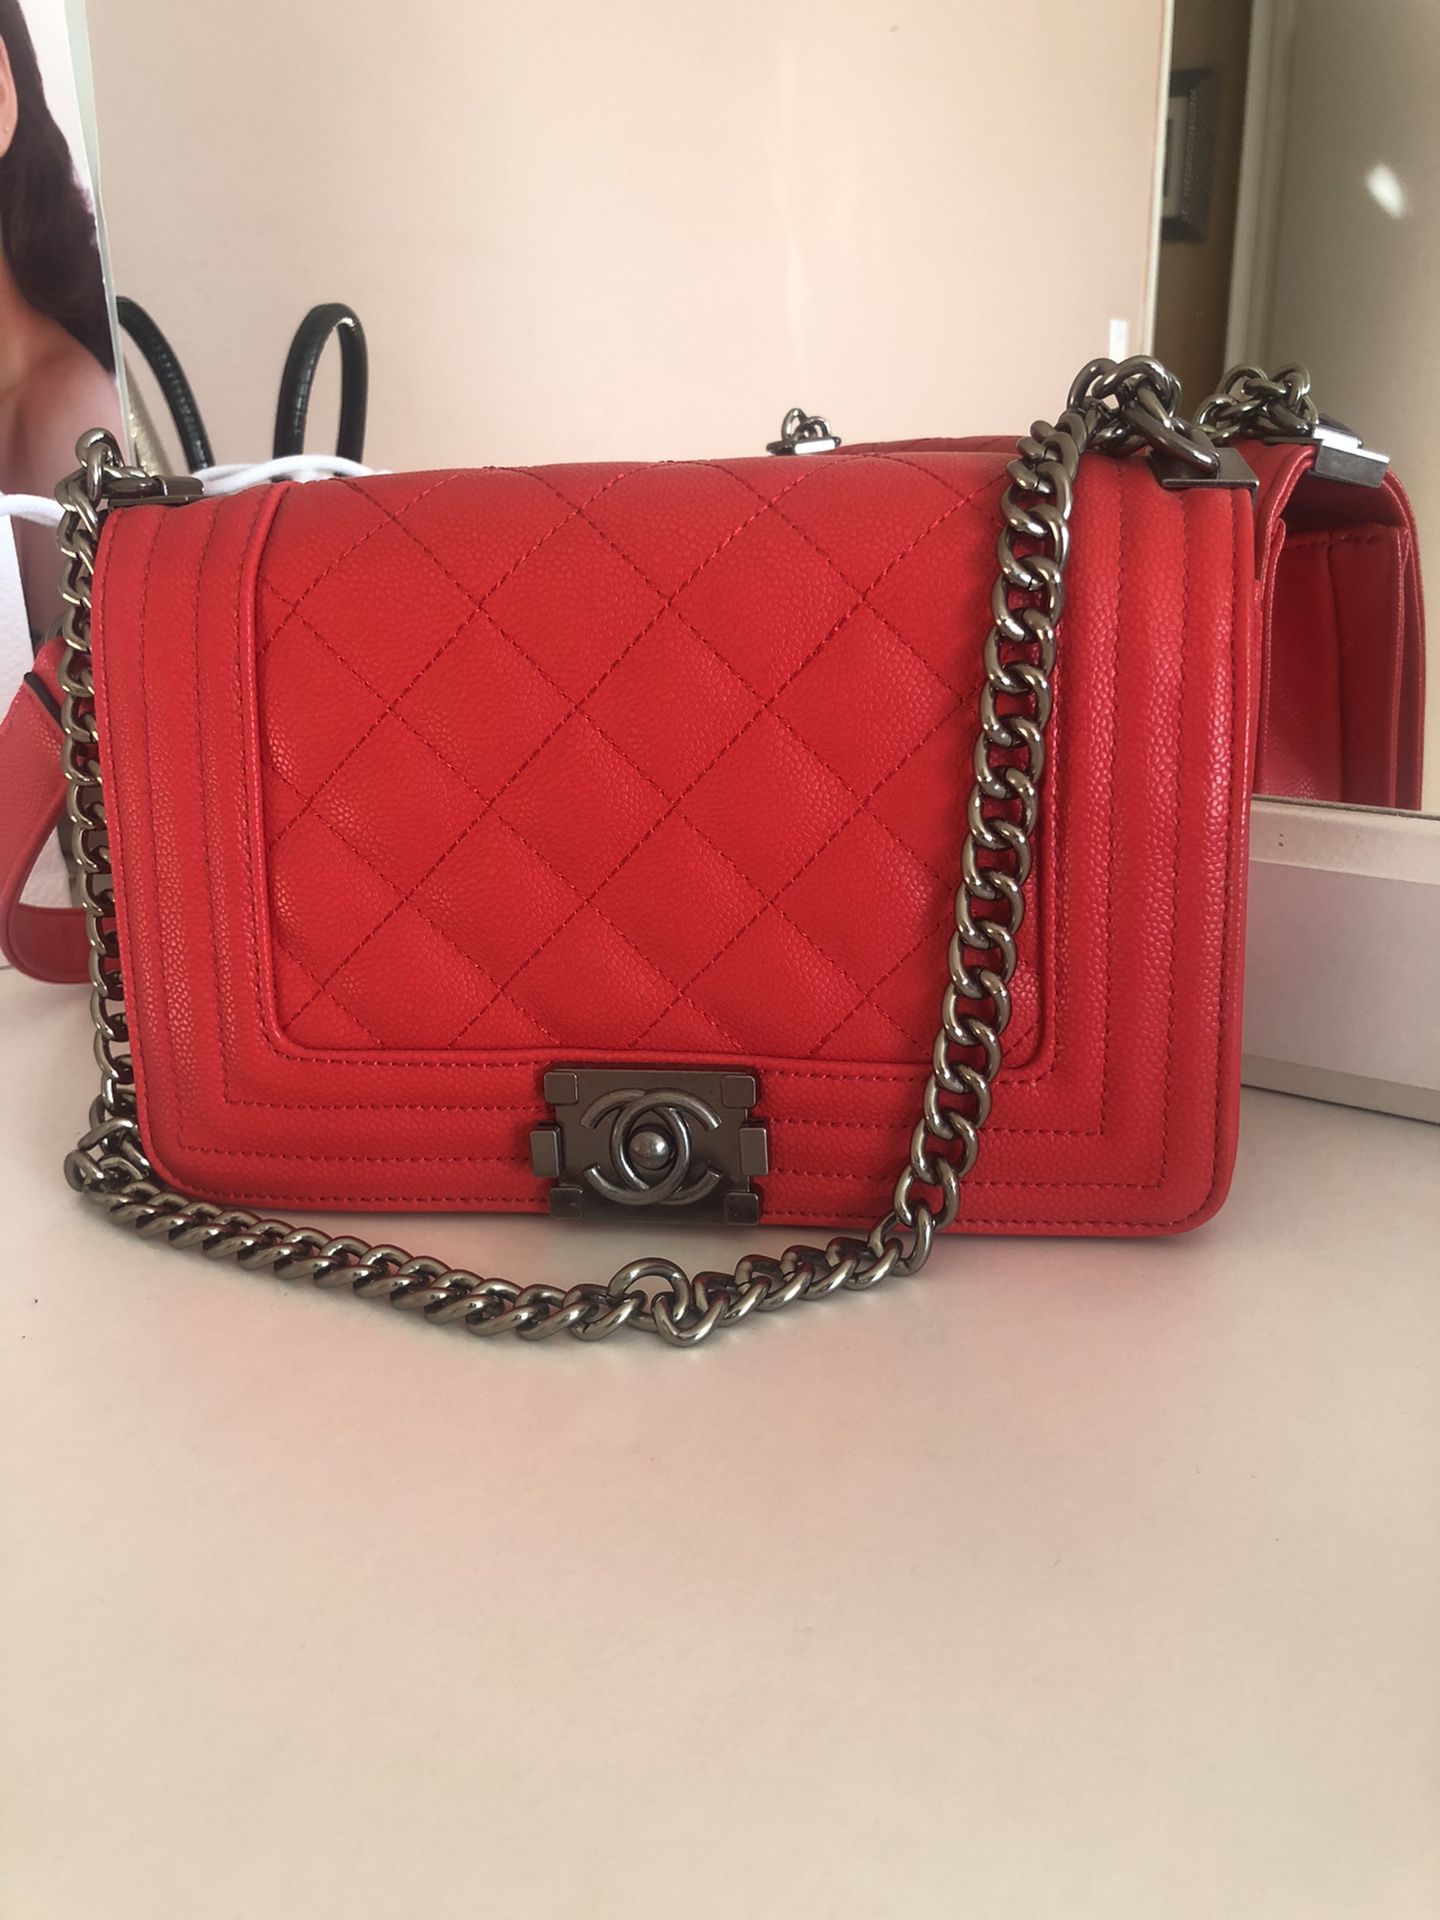 Chanel Bag!